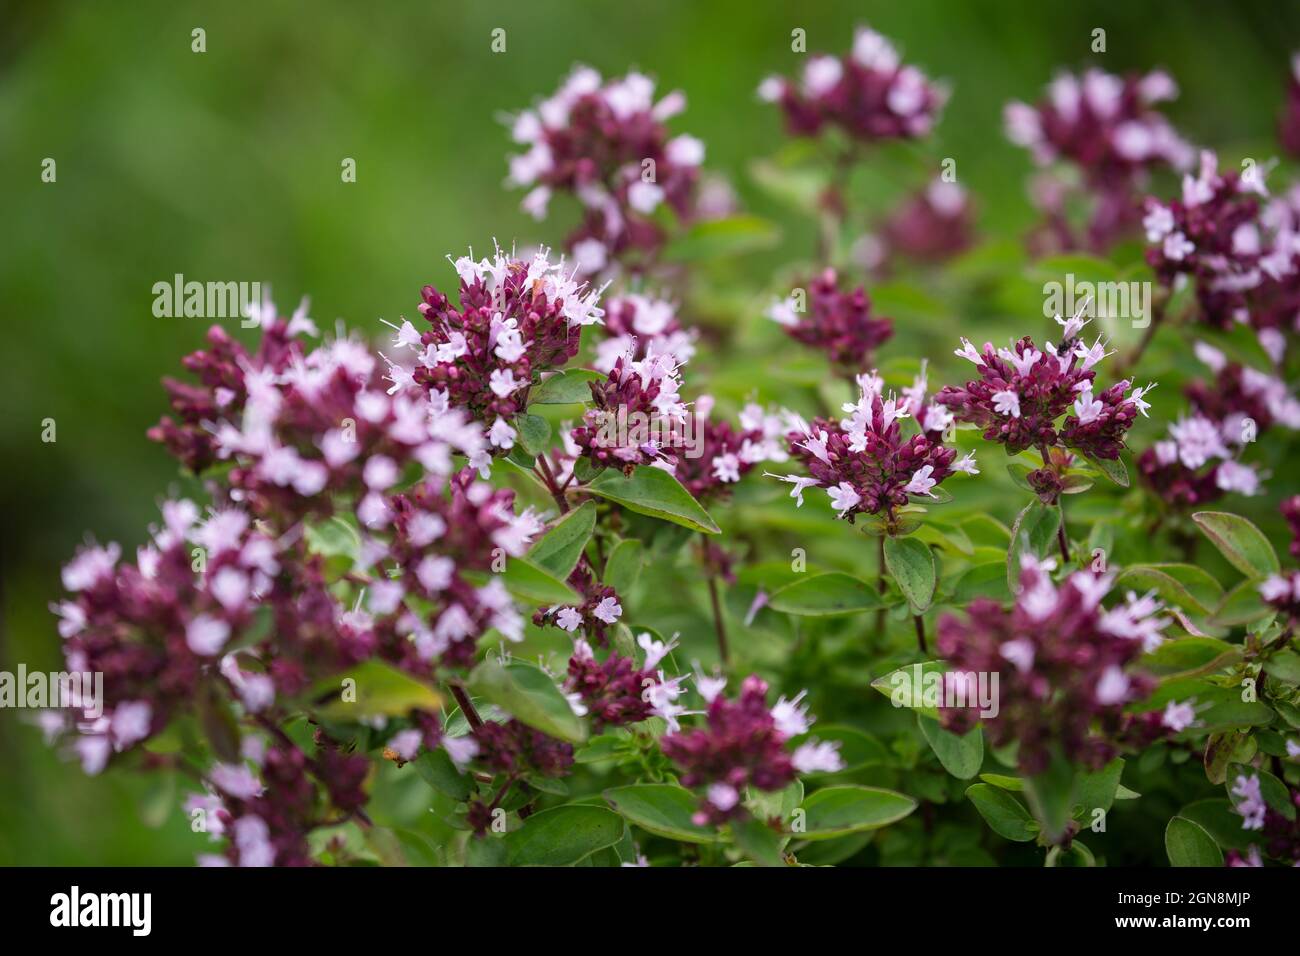 Pianta aromatica e medicinale Oregano (Origanum vulgare) con fiori rosa e viola Foto Stock